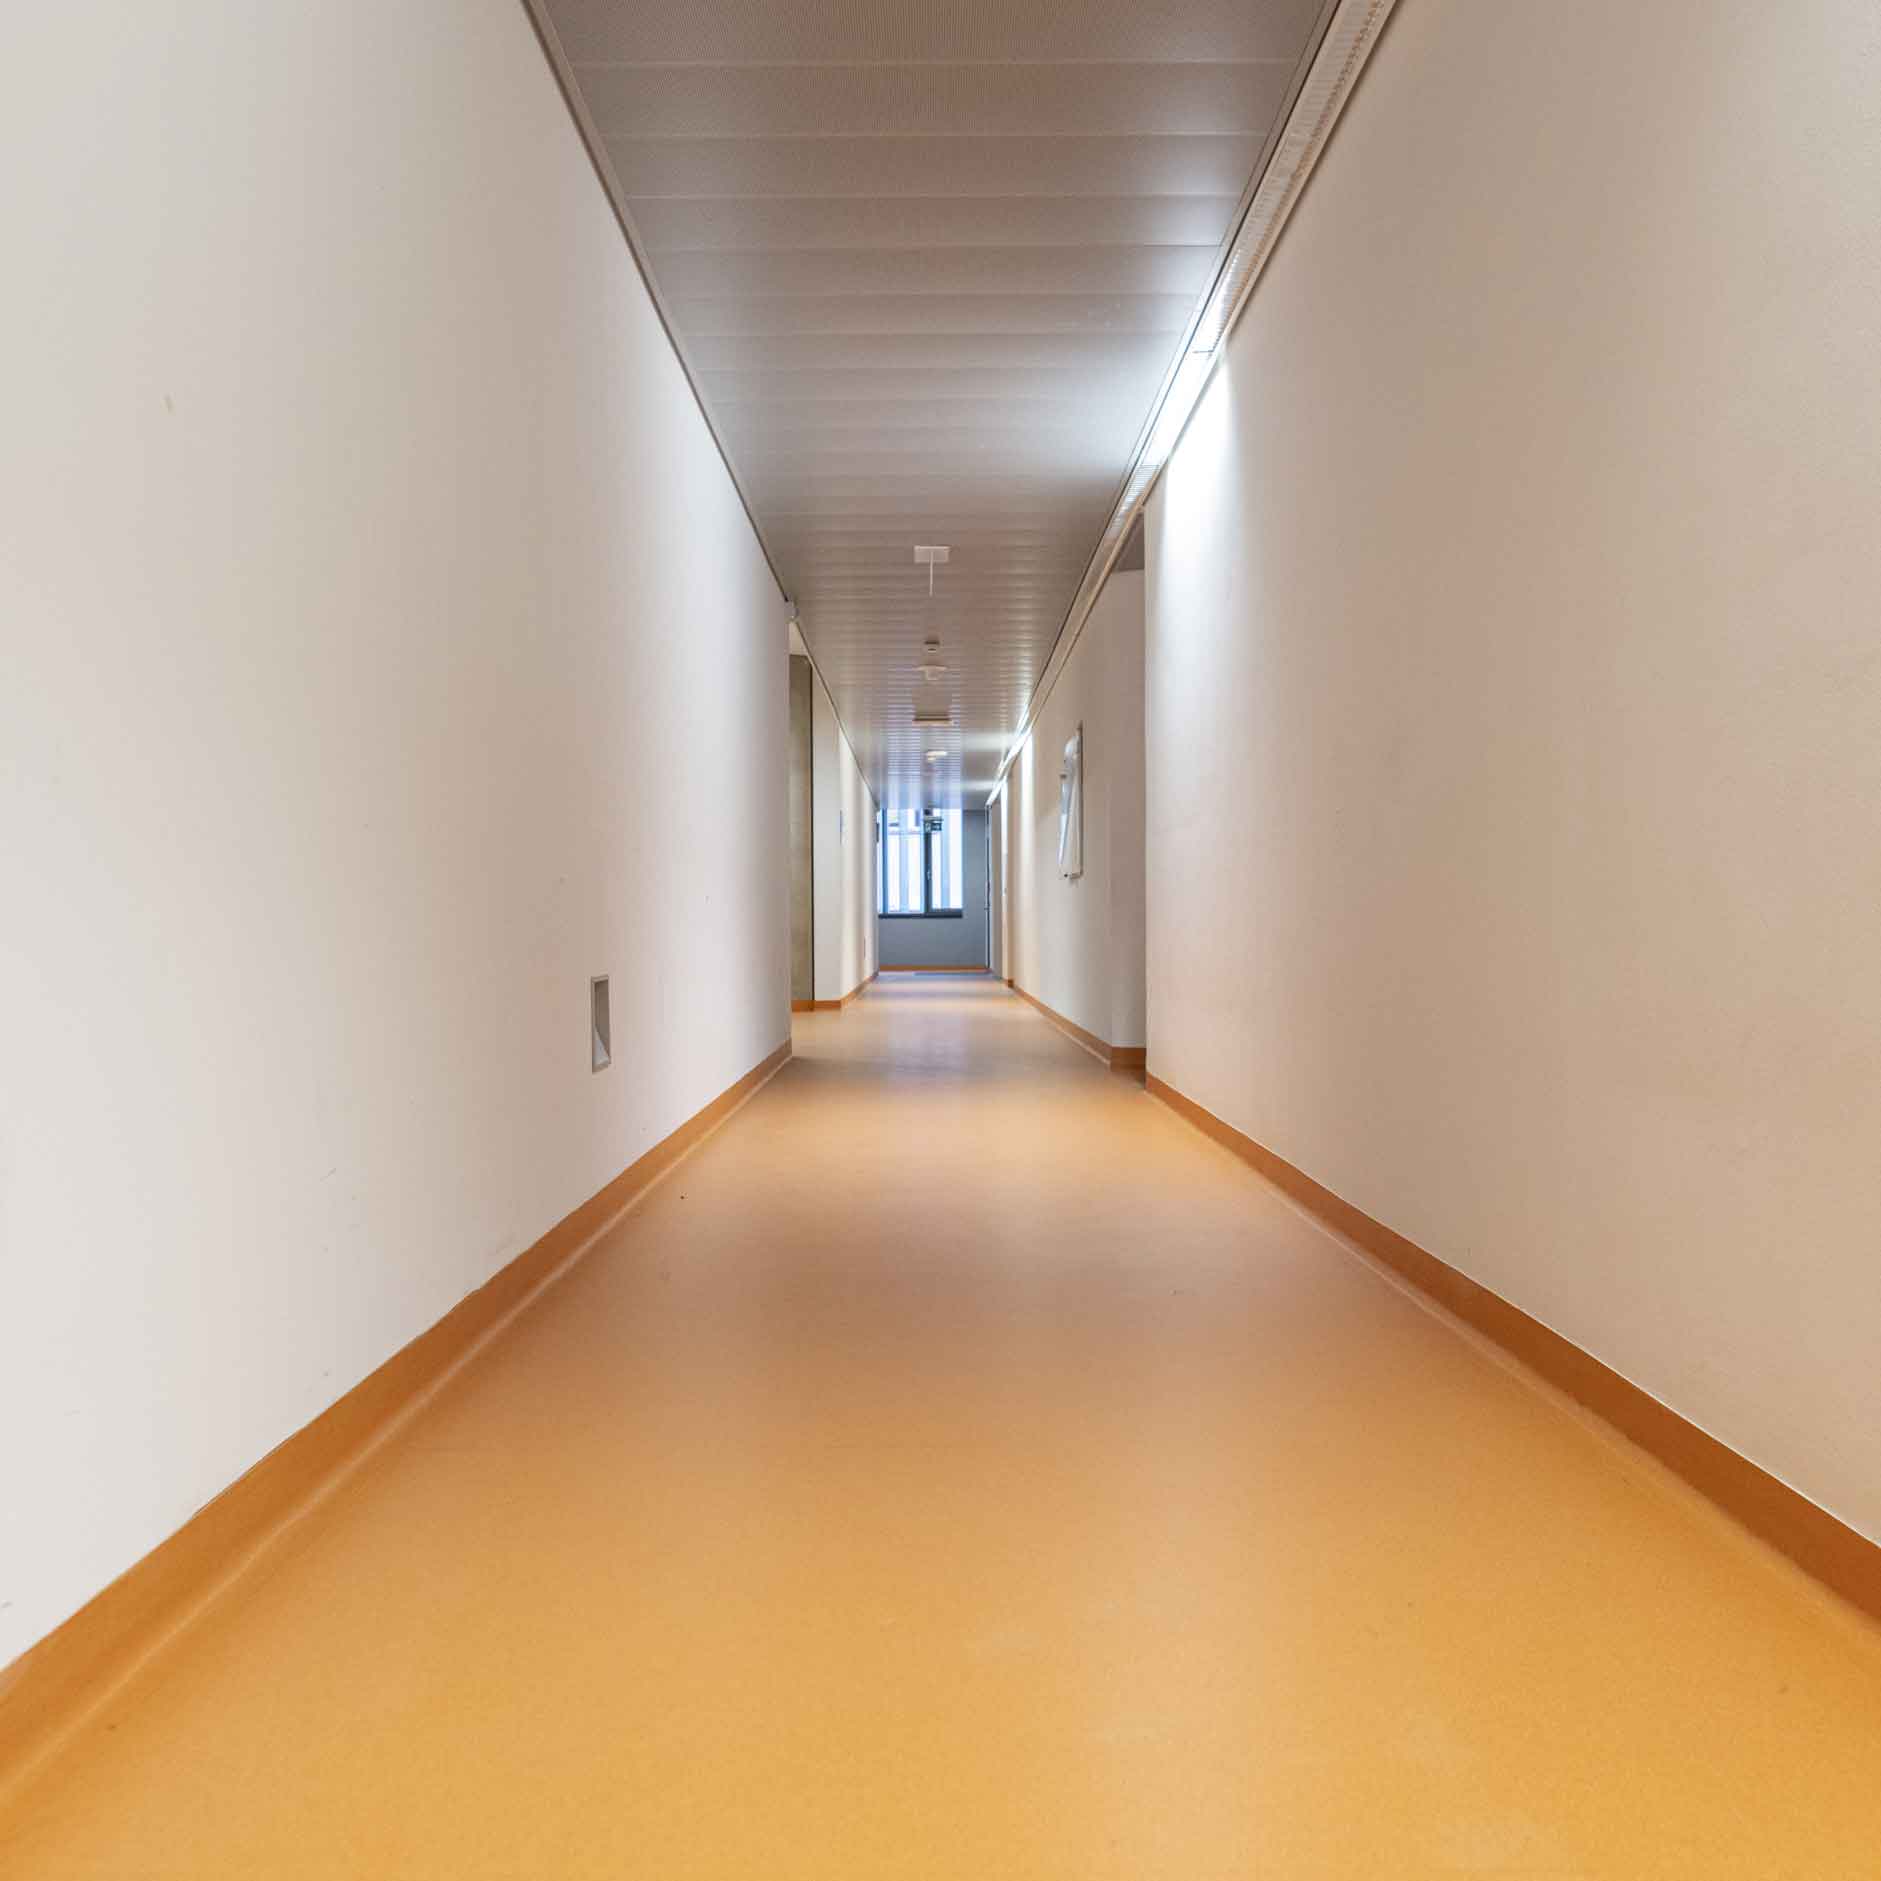 Bild zeigt Boden nach Kunststoffbodensanierung im Gang er Universität Graz.